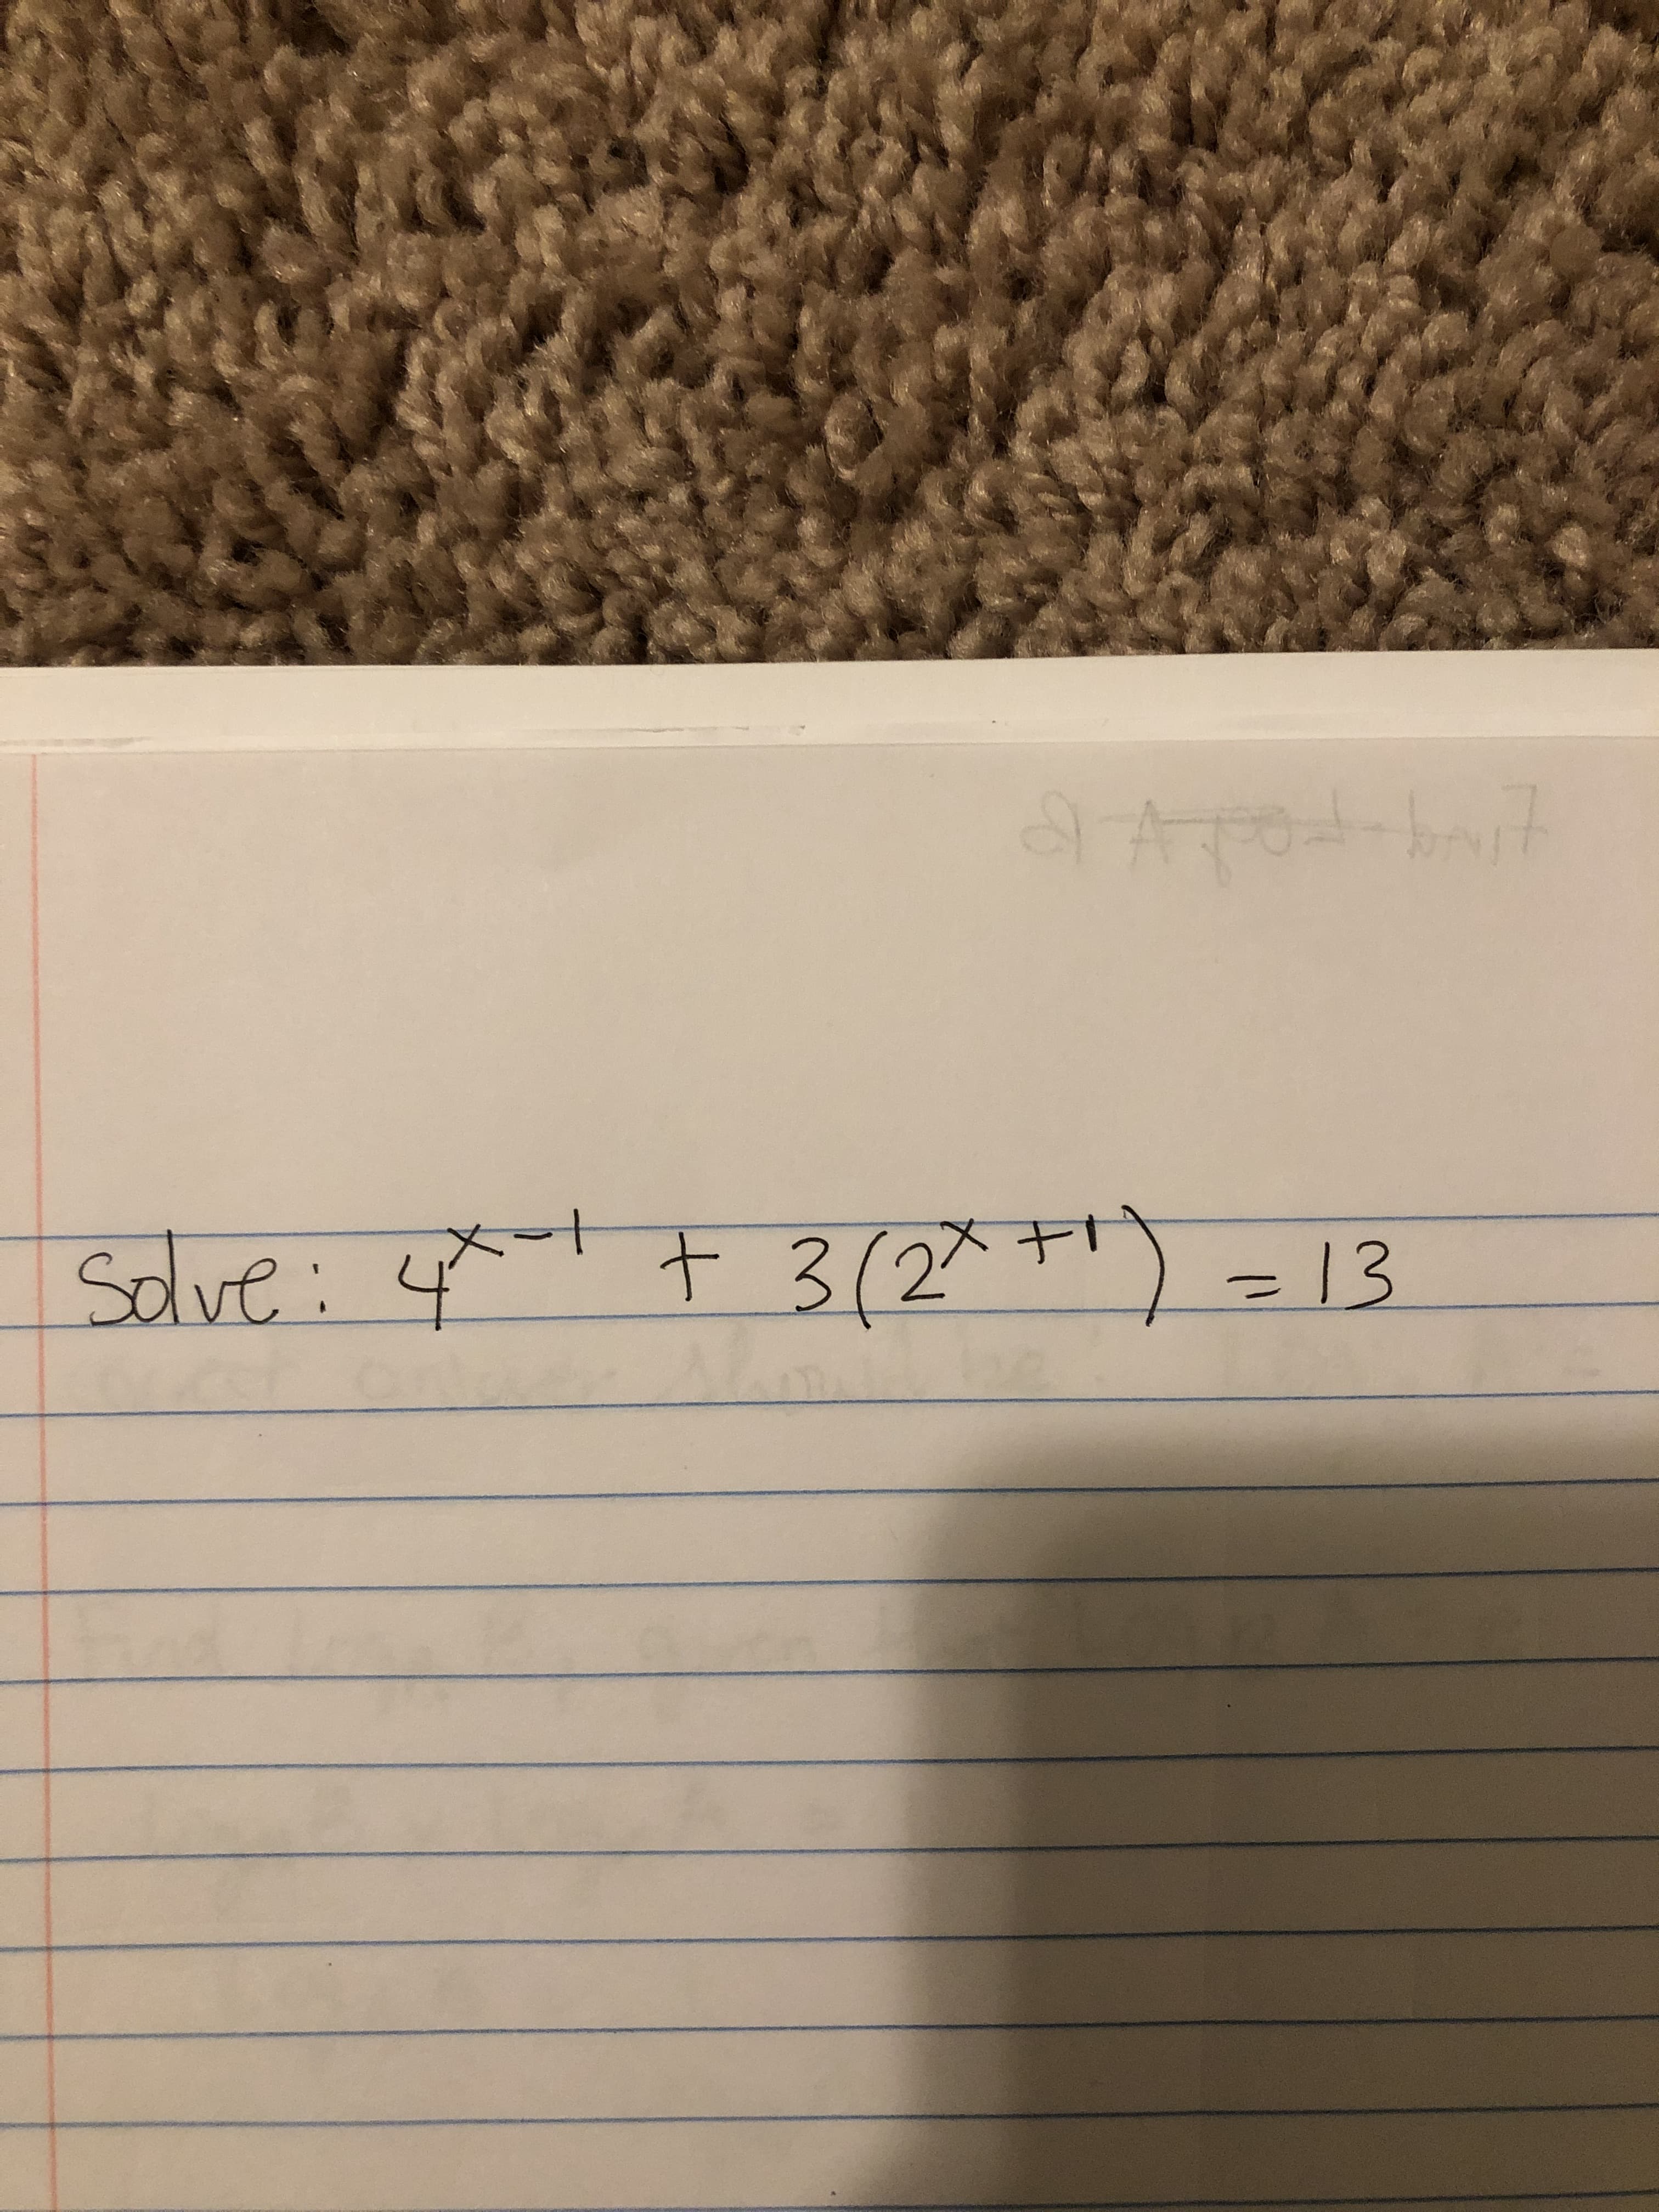 Sdlve: 4
t 3(2^*") = 13
